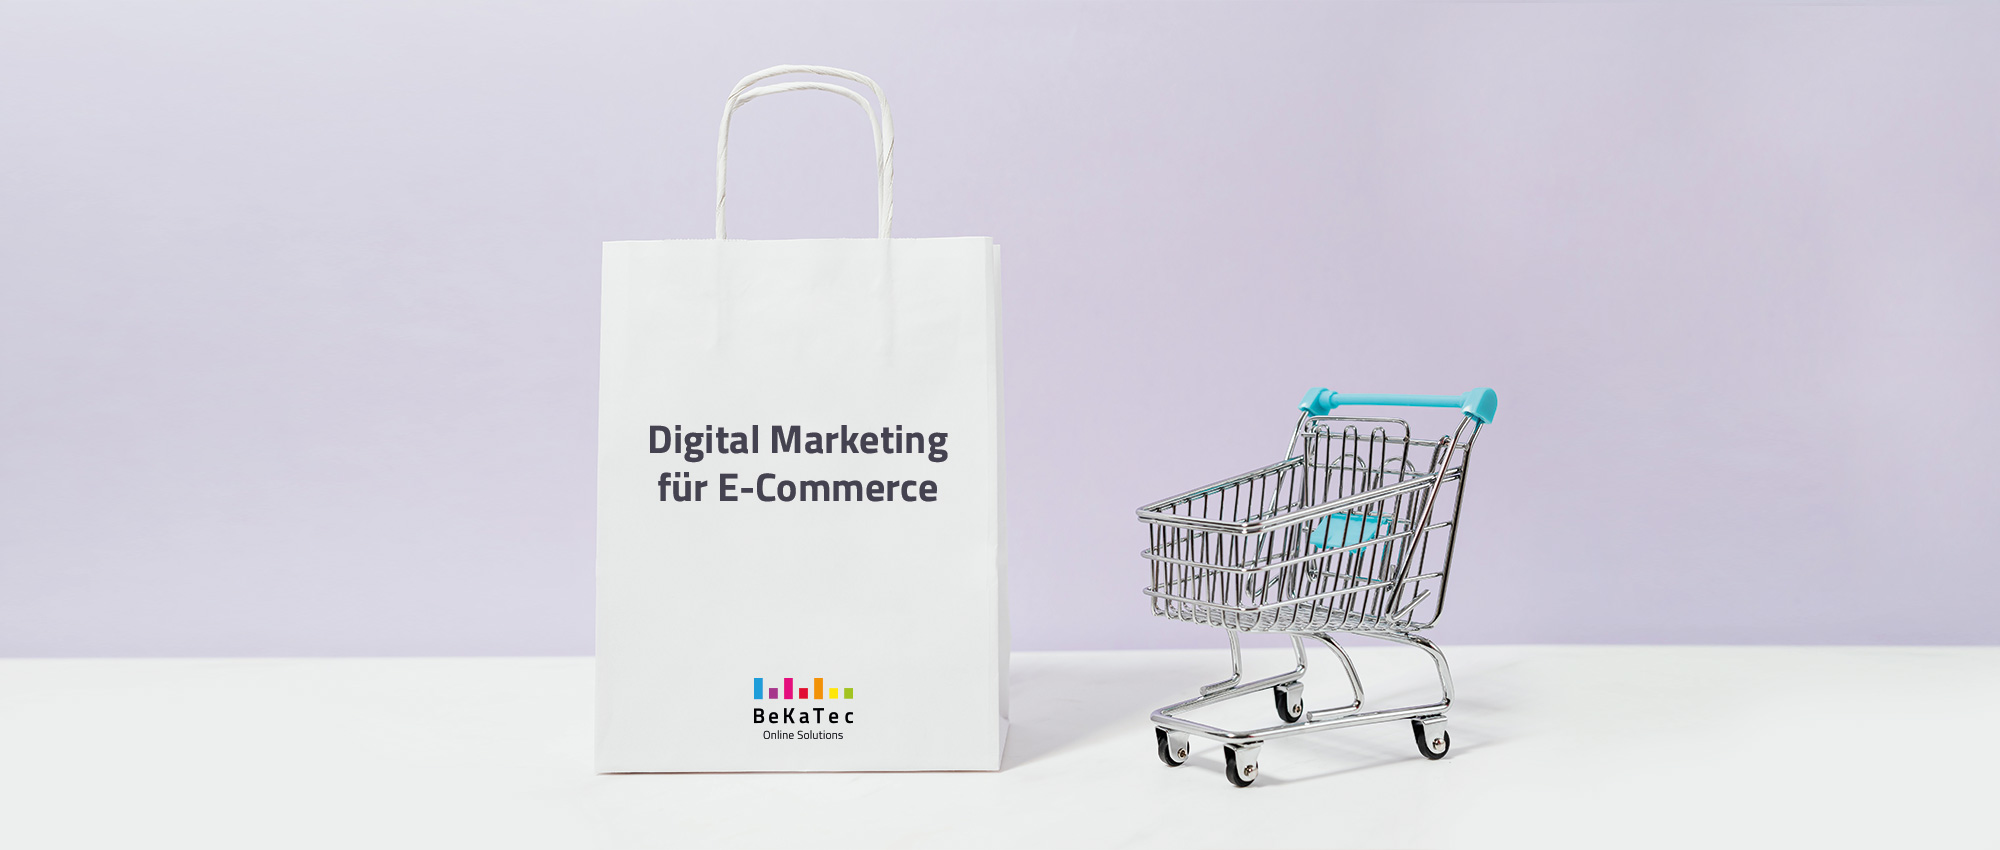 Ein Einkaufswagen mit türkisem Griff und Kindersitz steht neben einer riesigen, weißen, mit Digital Marketing für E-Commerce über dem Bekatec Regenbogenbalken Logo beschrifteten Papiertüte.